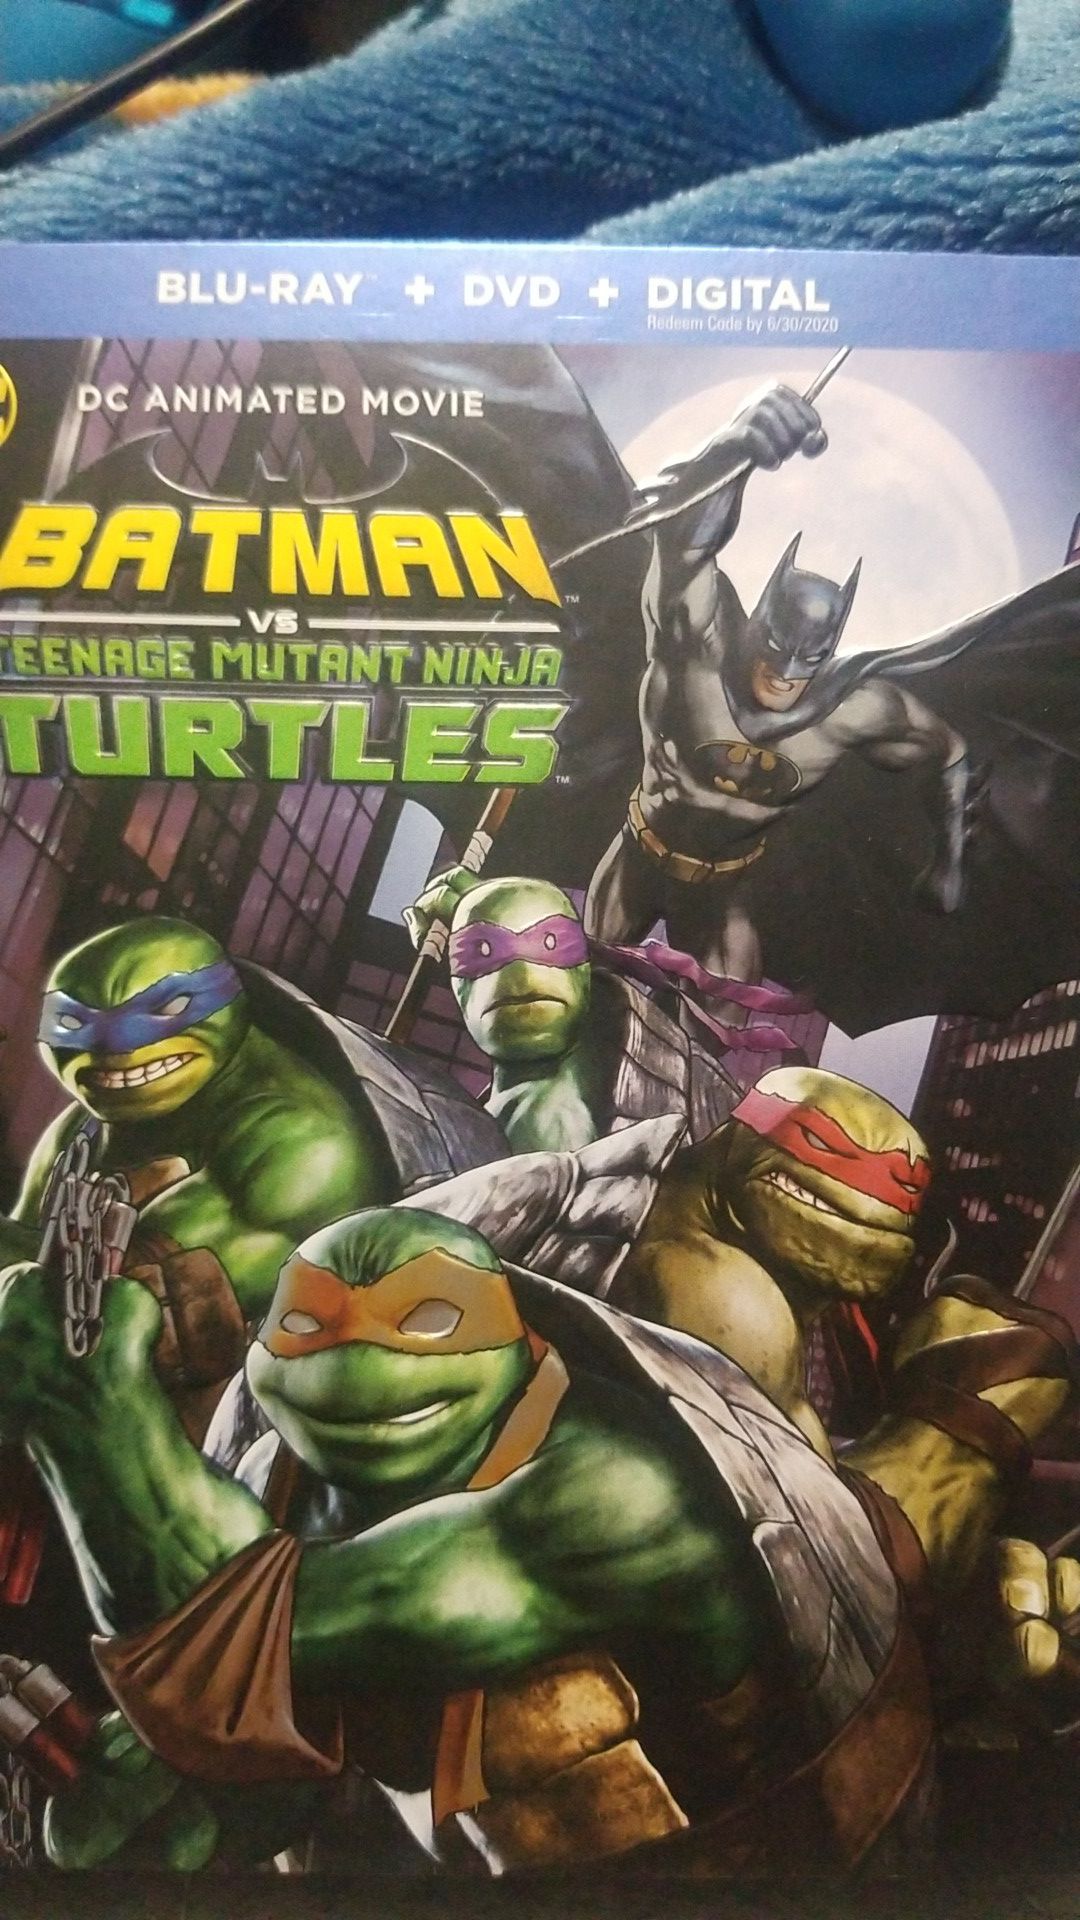 Batman vs teenage mutant ninja turtles